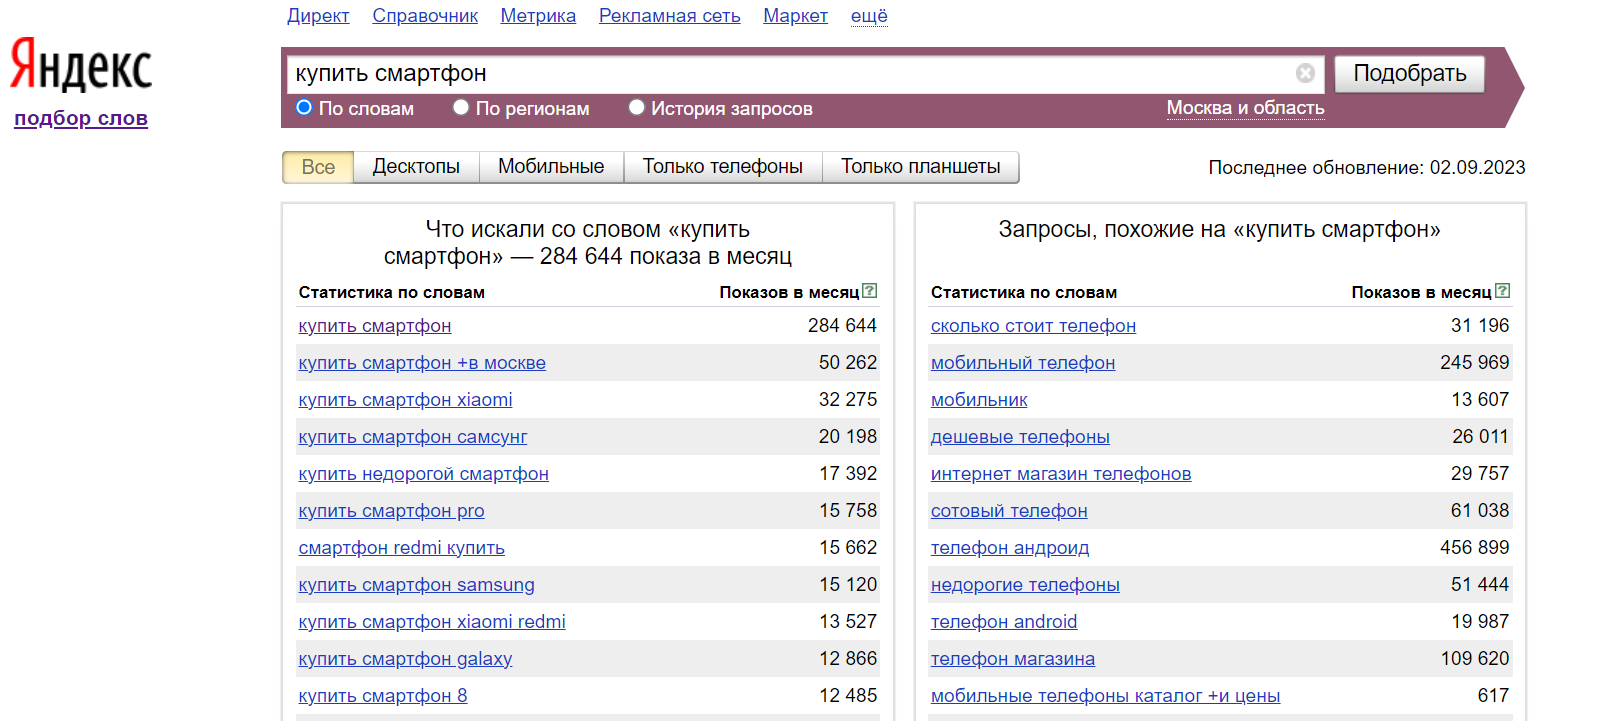 Продвинуть сайт москва. Подбор ключевых слов. Подобрать ключевые слова для сайта. Запросы в Яндексе по словам.